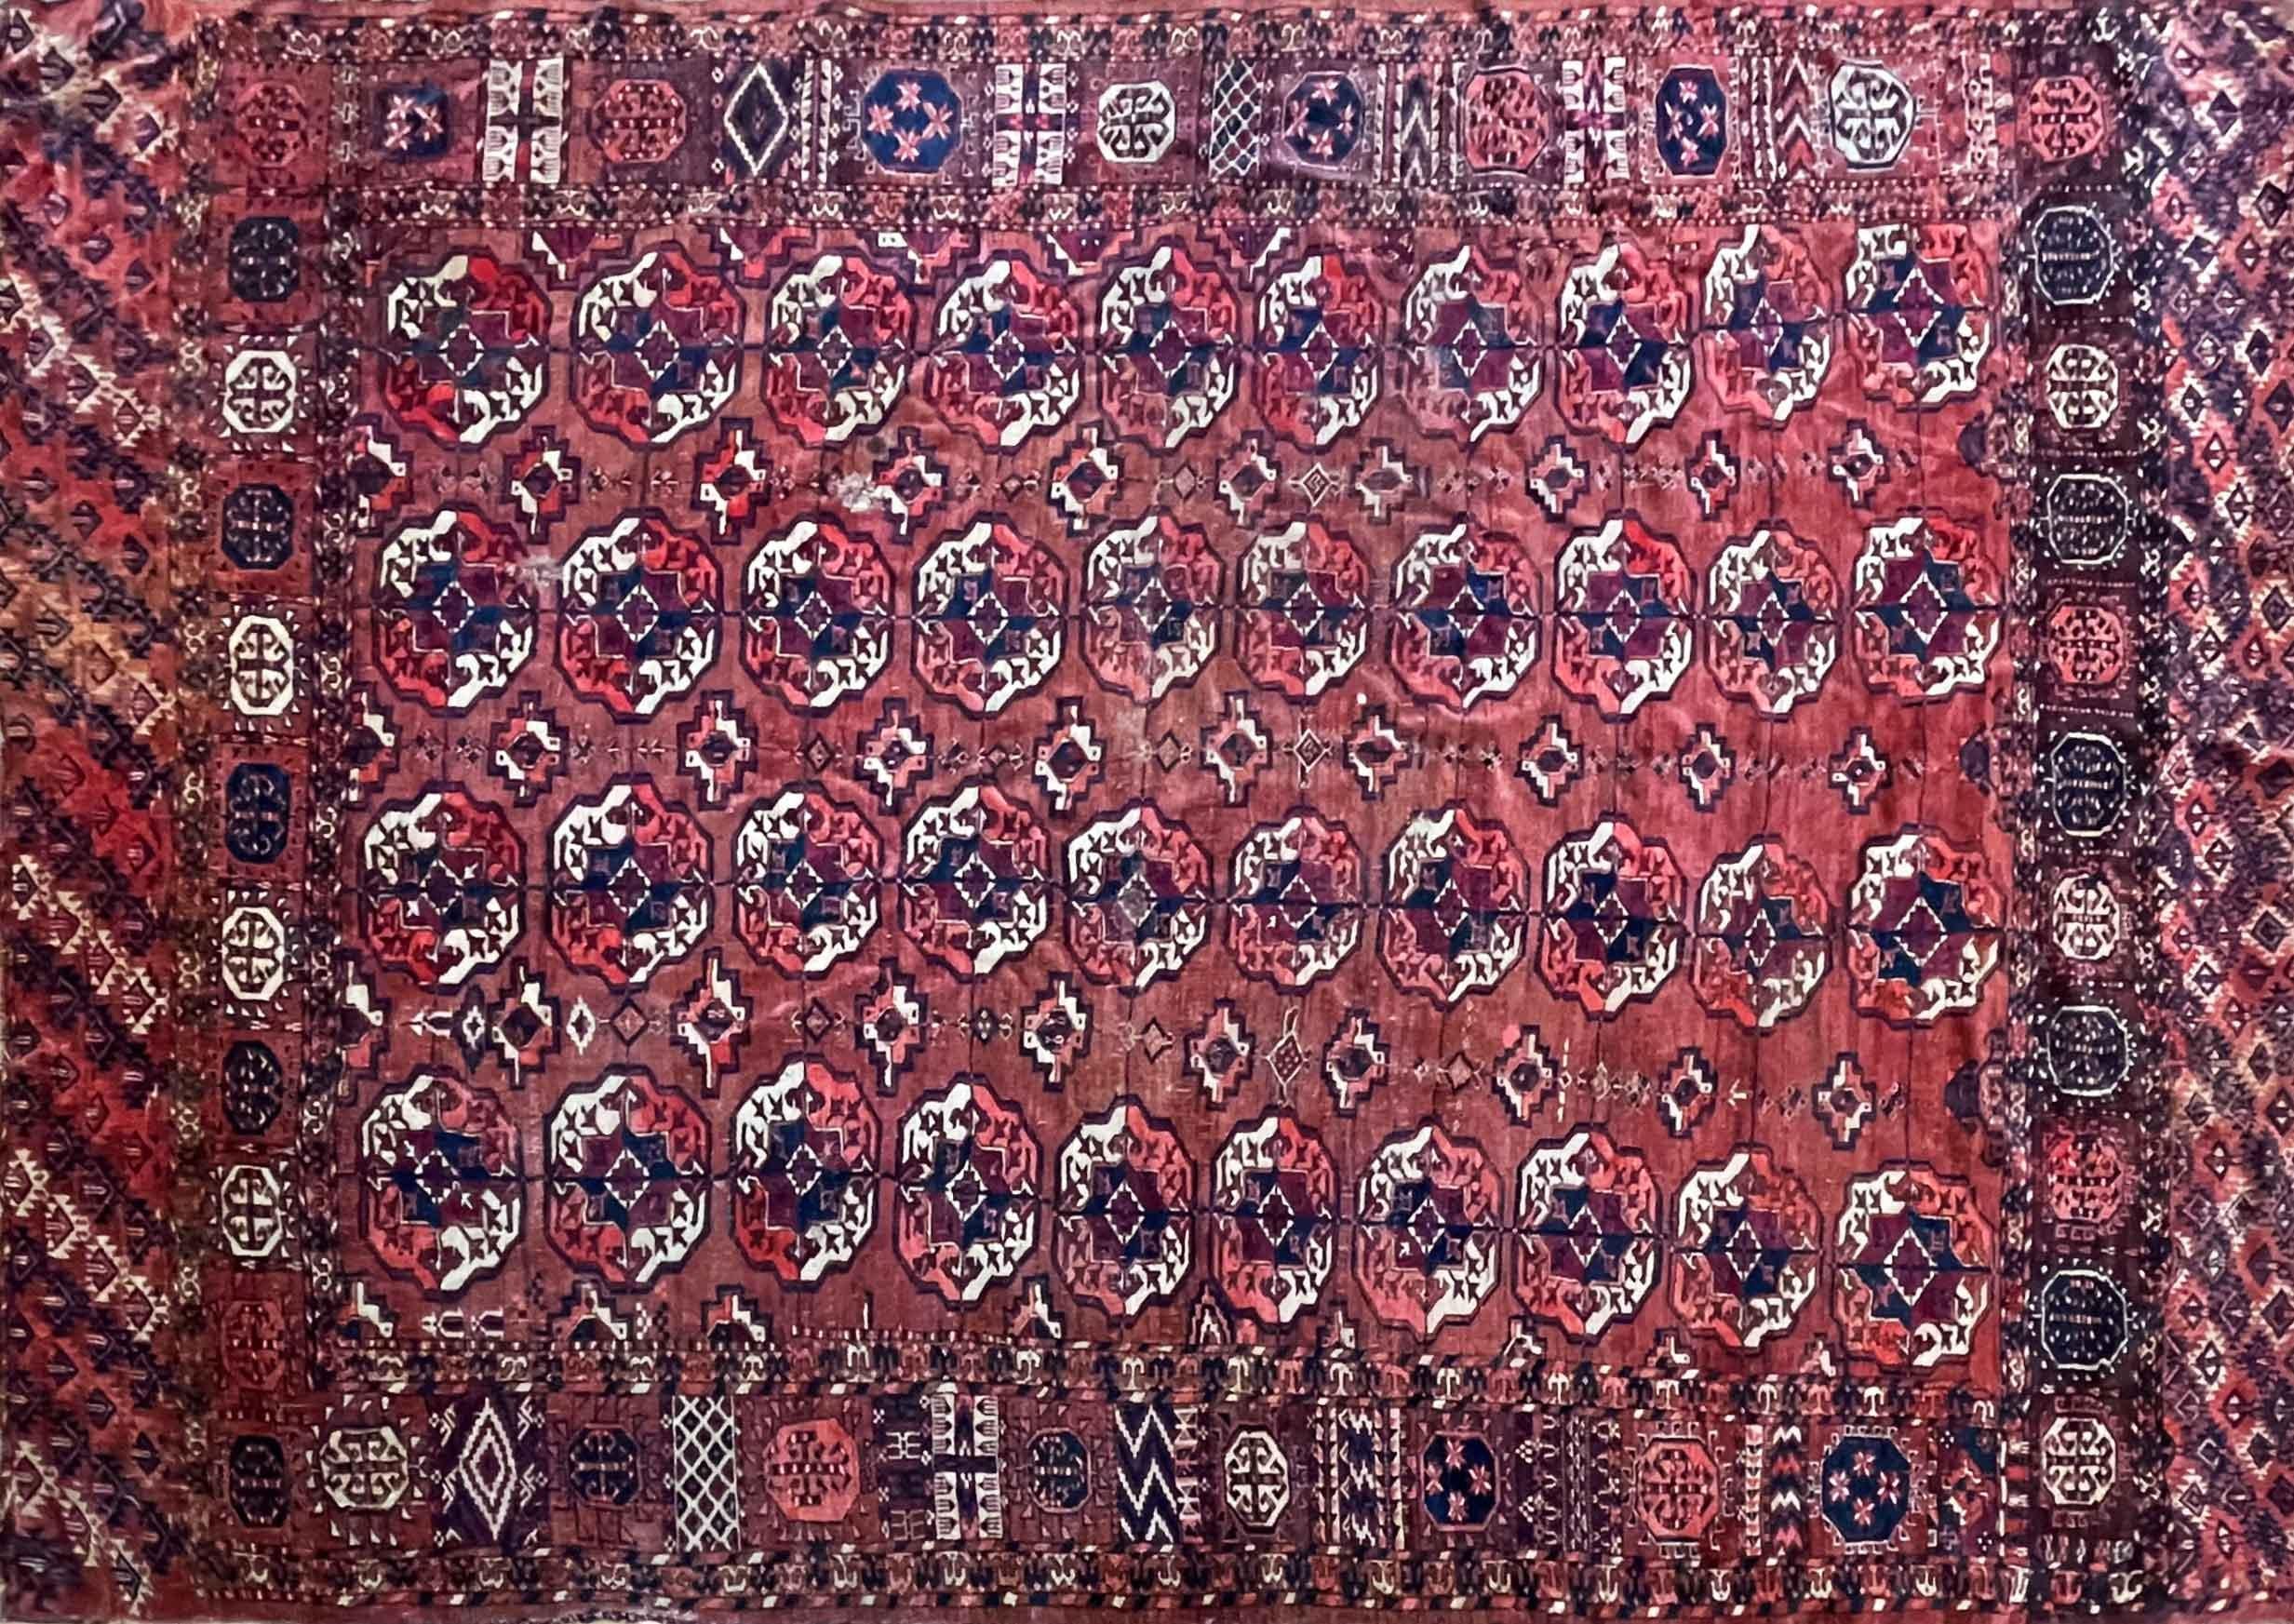 Embarquez pour un voyage dans le temps et découvrez la riche histoire des tapis turkmènes, témoignage des tribus nomades qui fabriquaient ces chefs-d'œuvre il y a plusieurs siècles. À une époque révolue, ces artisans utilisaient des matériaux locaux